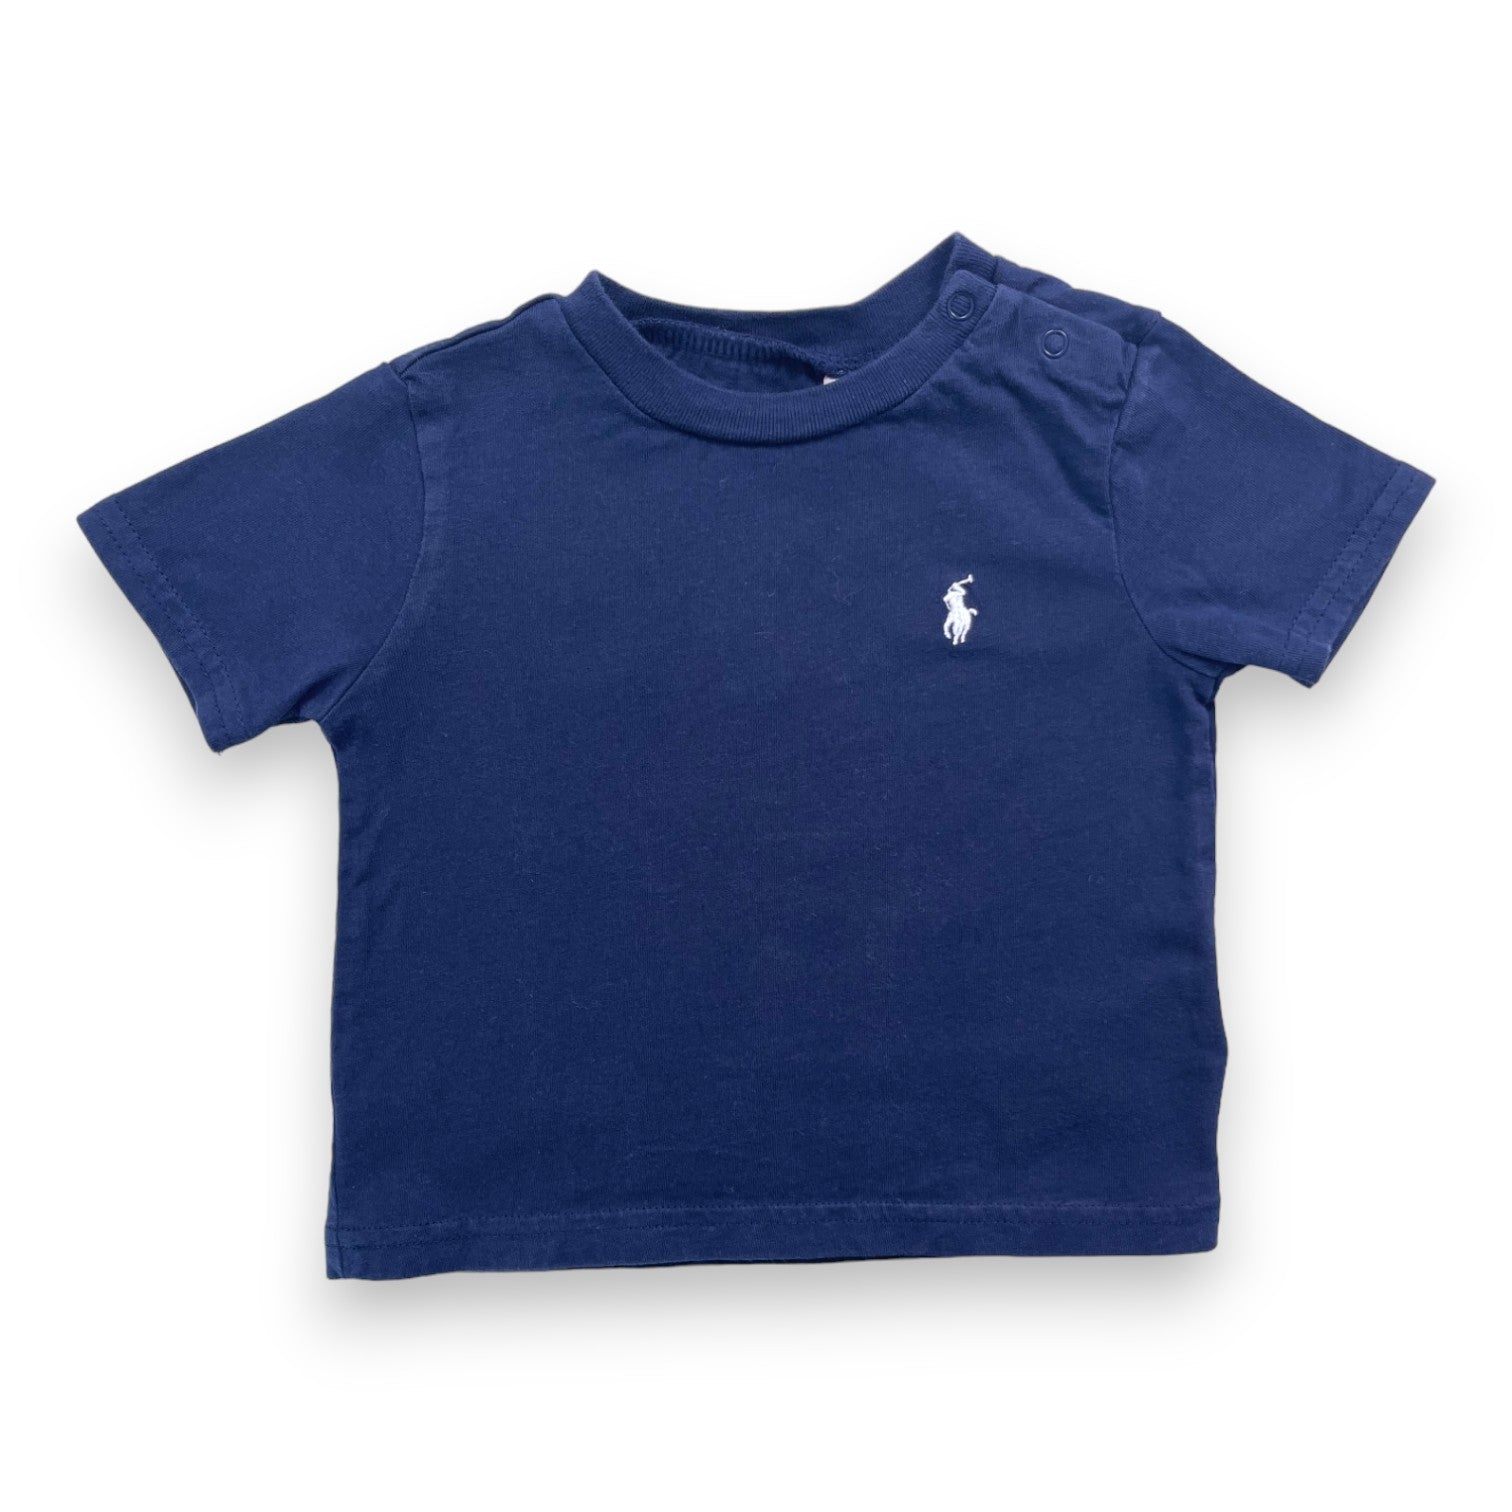 RALPH LAUREN - T shirt bleu marine logo brodé - 9 mois